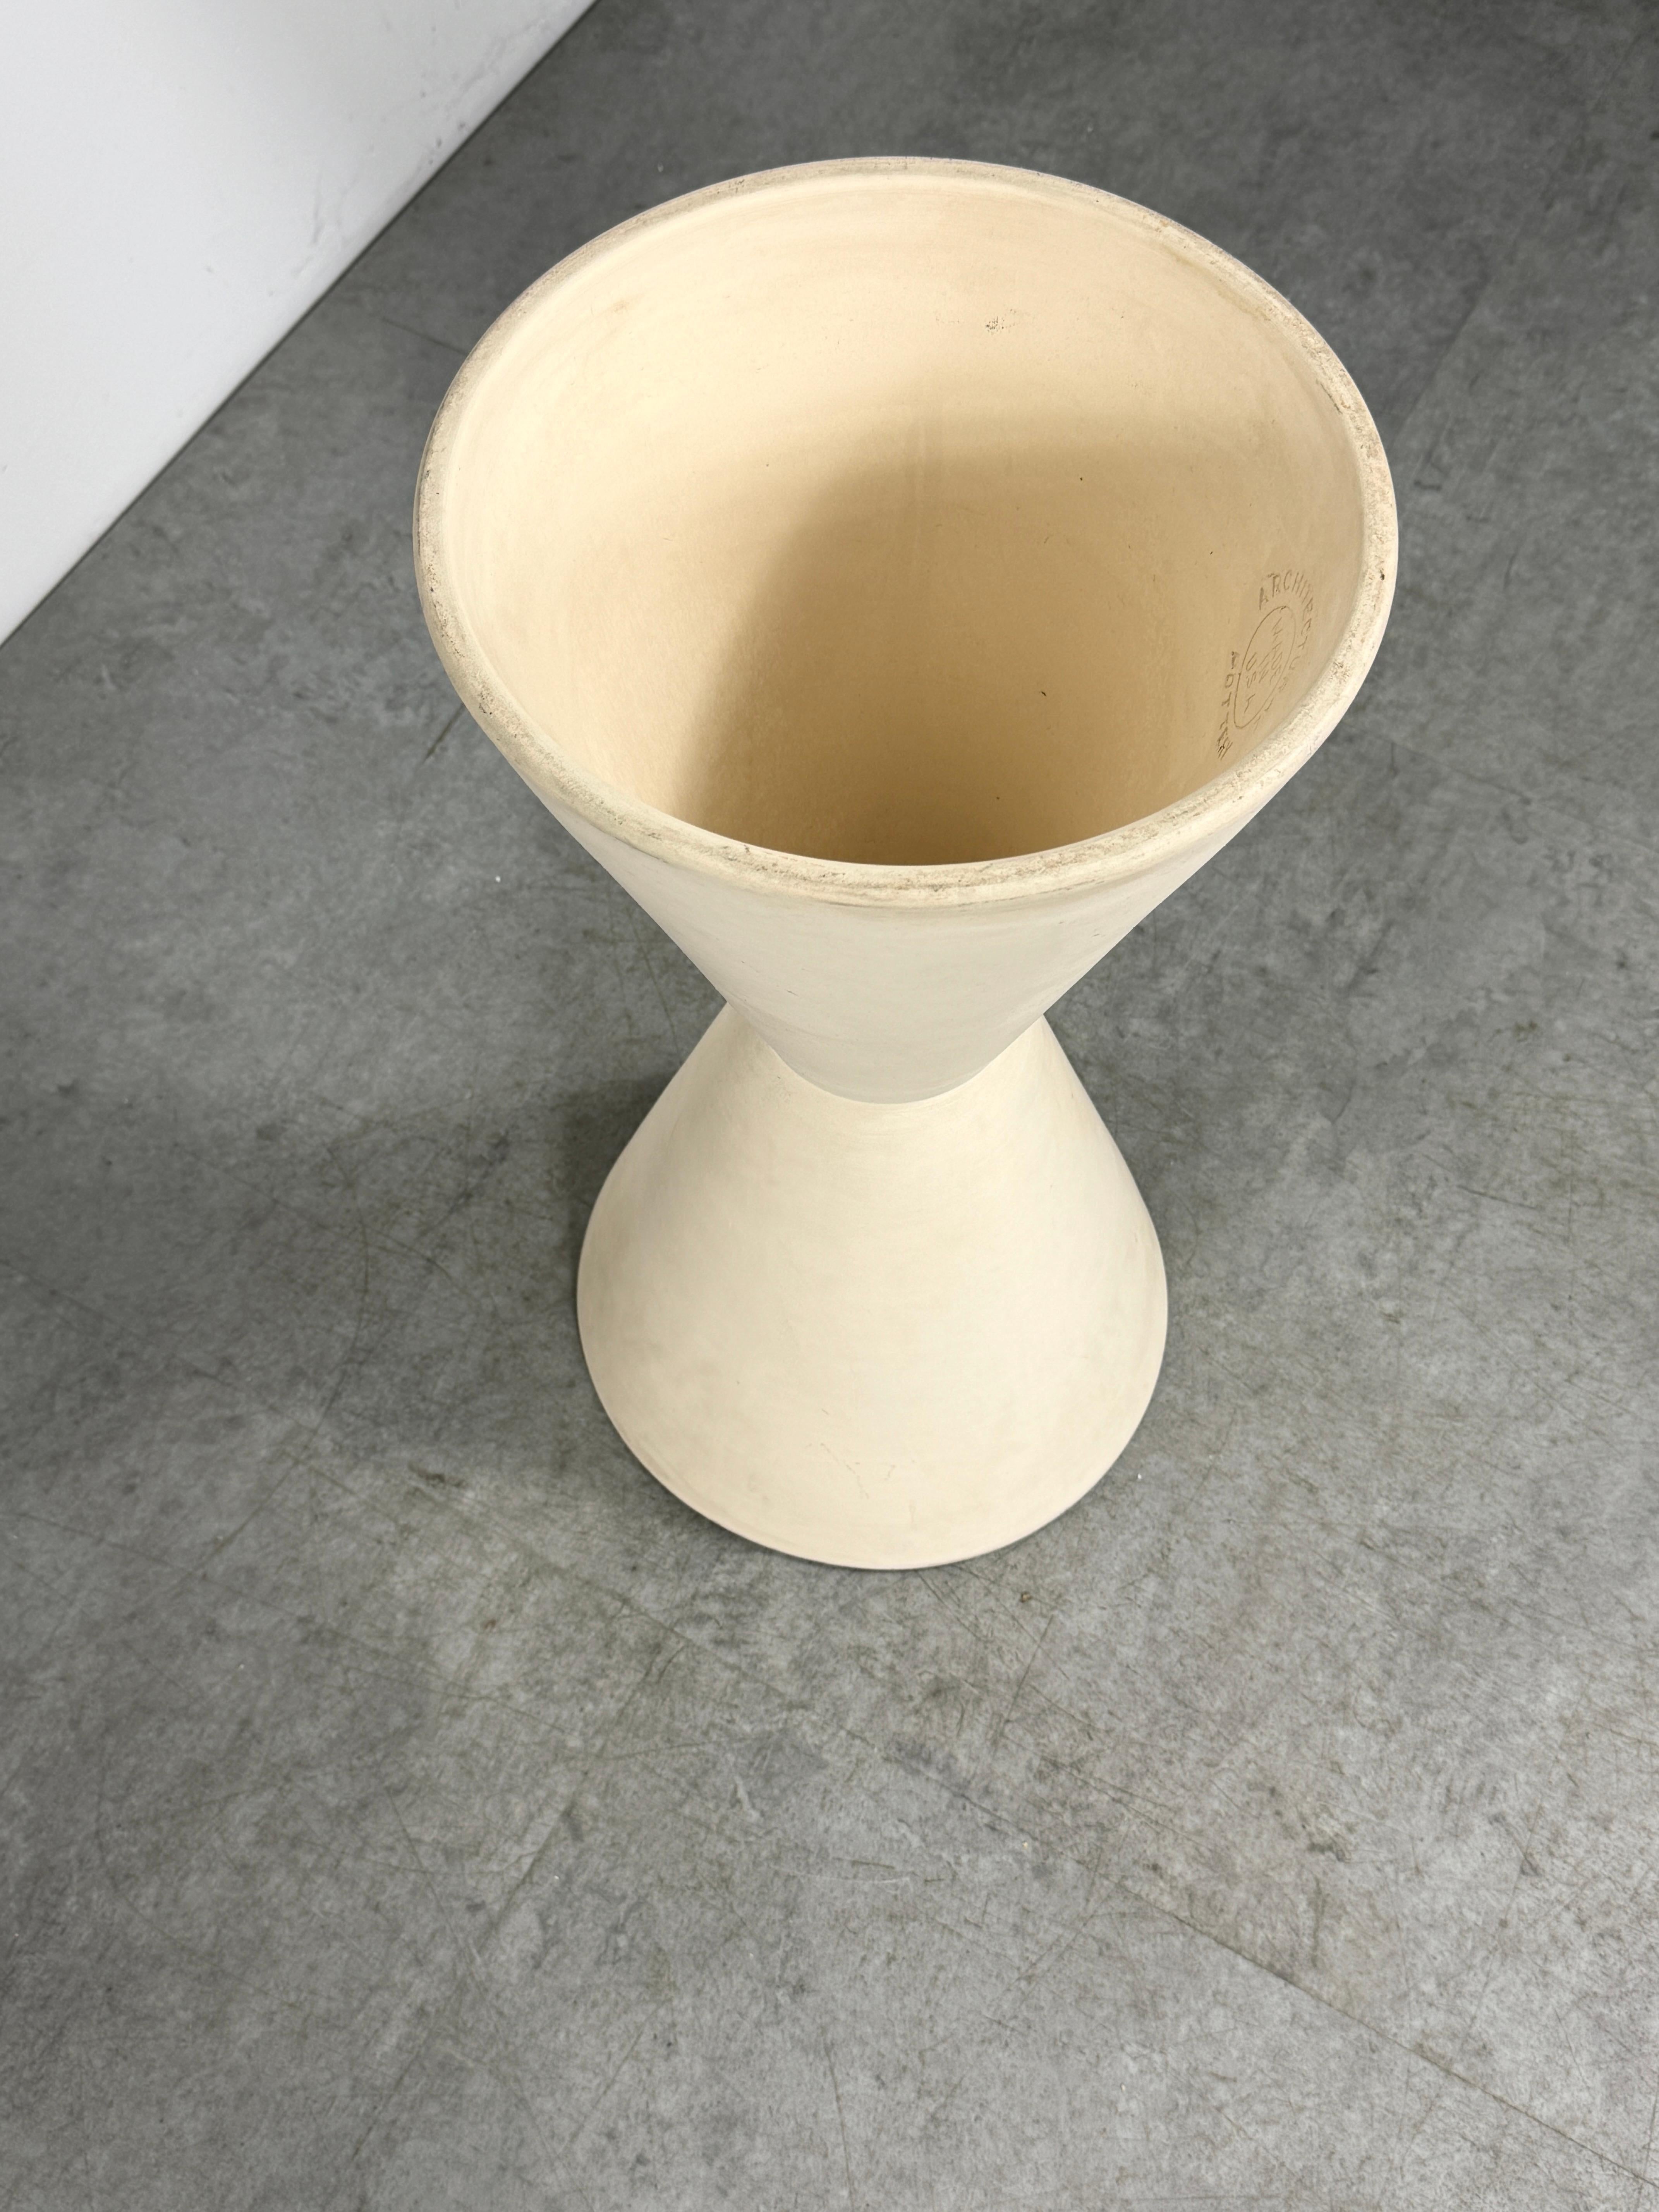 Lagardo Tackett Architectural Pottery Double Cone Planter Bisque Ceramic 1950s For Sale 3